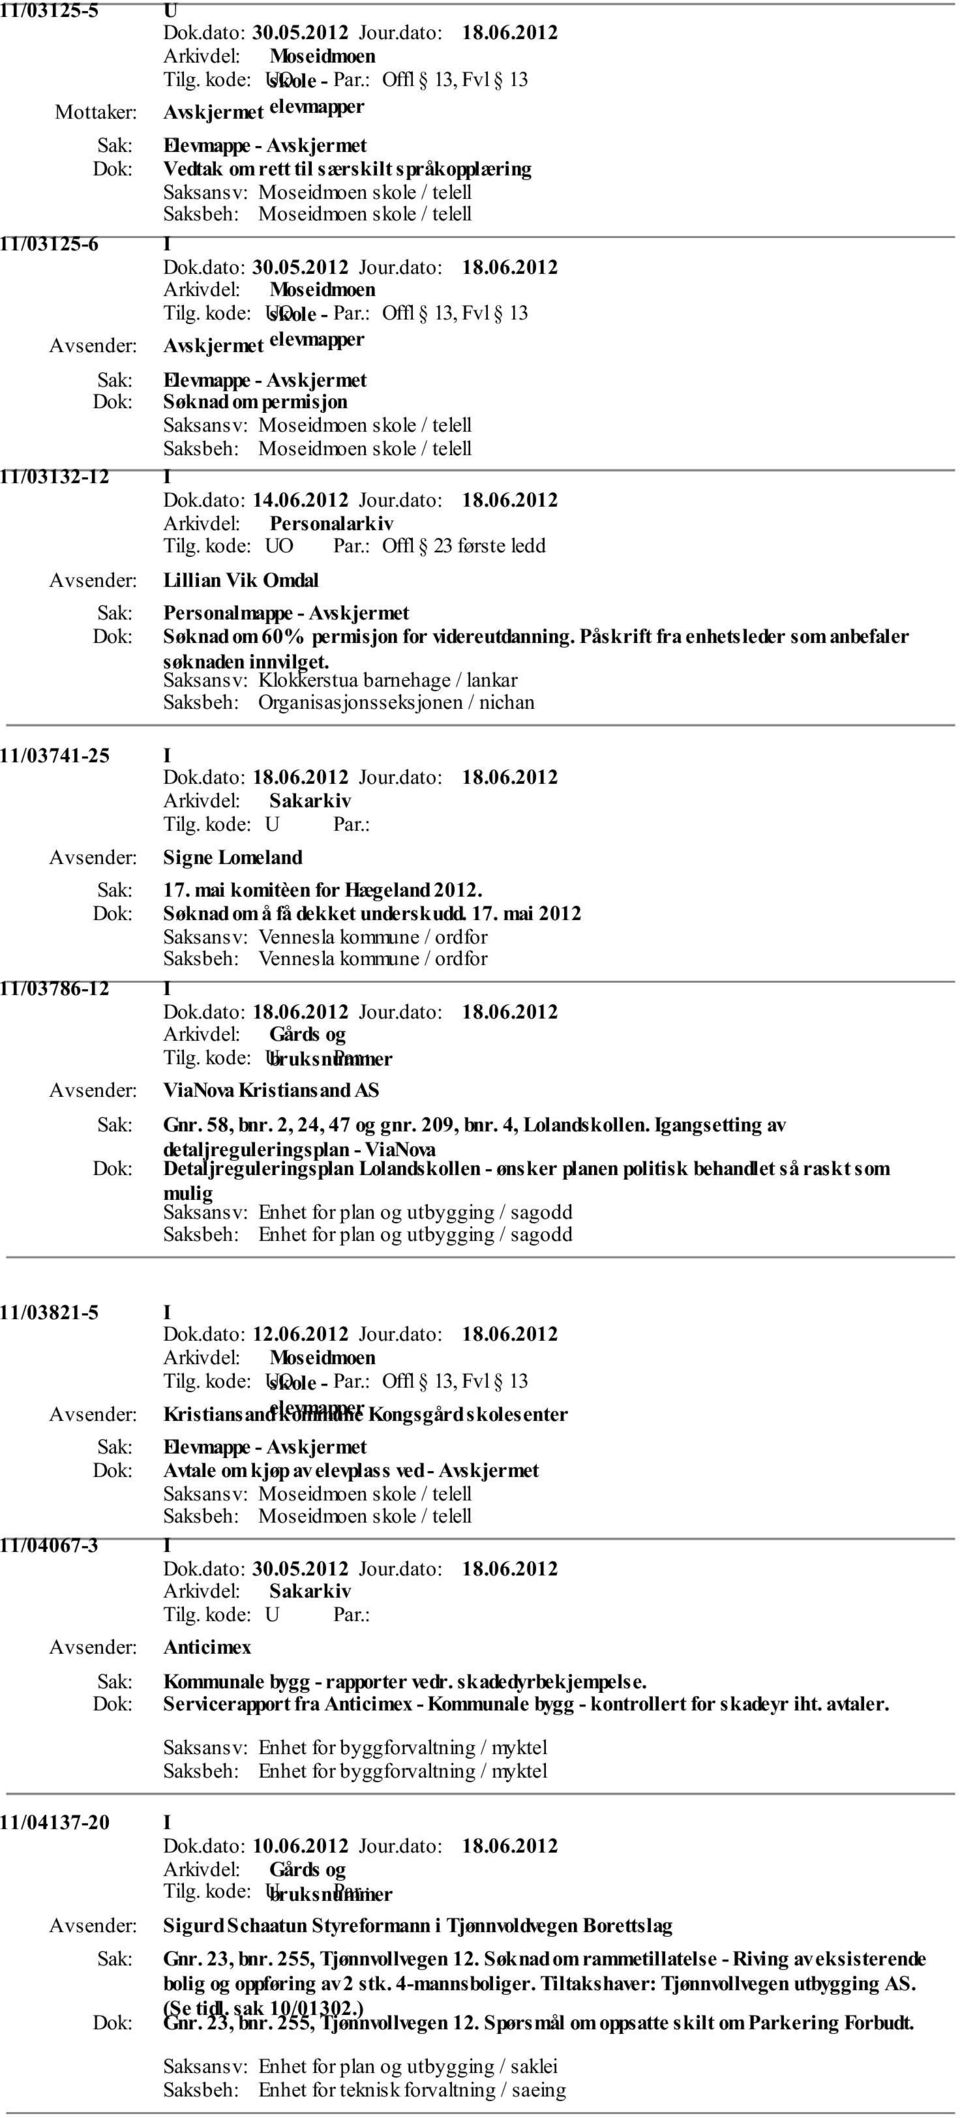 Saksansv: Klokkerstua barnehage / lankar Saksbeh: Organisasjonsseksjonen / nichan 11/03741-25 I Signe Lomeland 17.